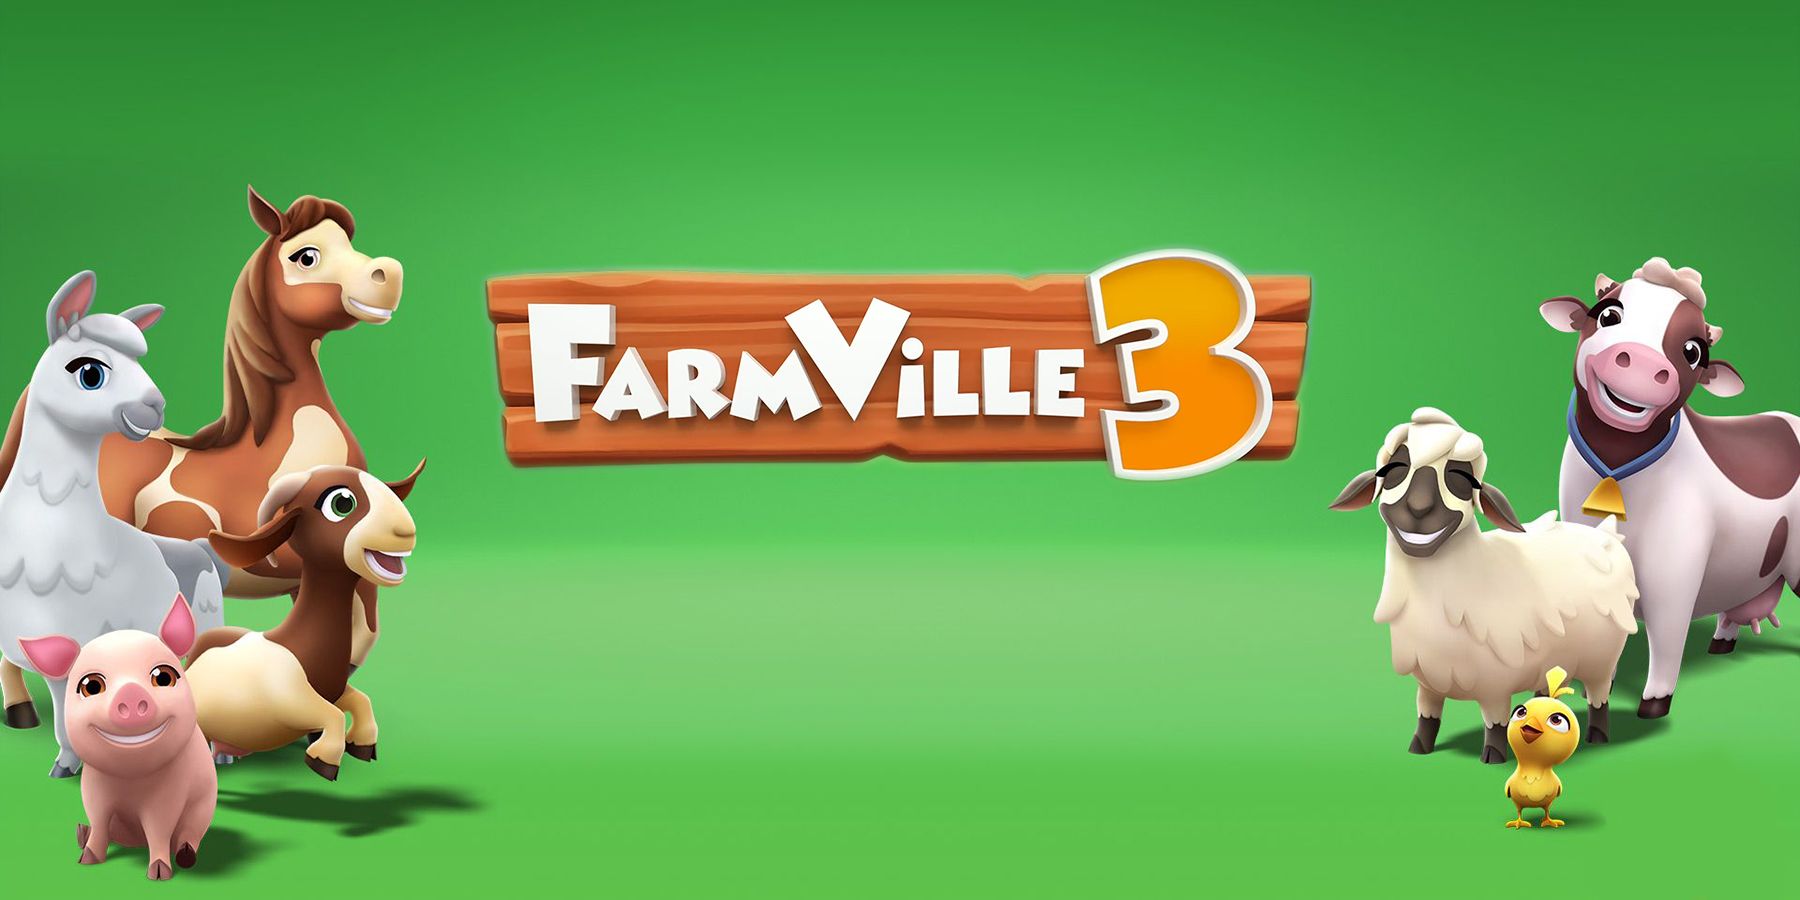 Zynga announces farmville 3 for mobile